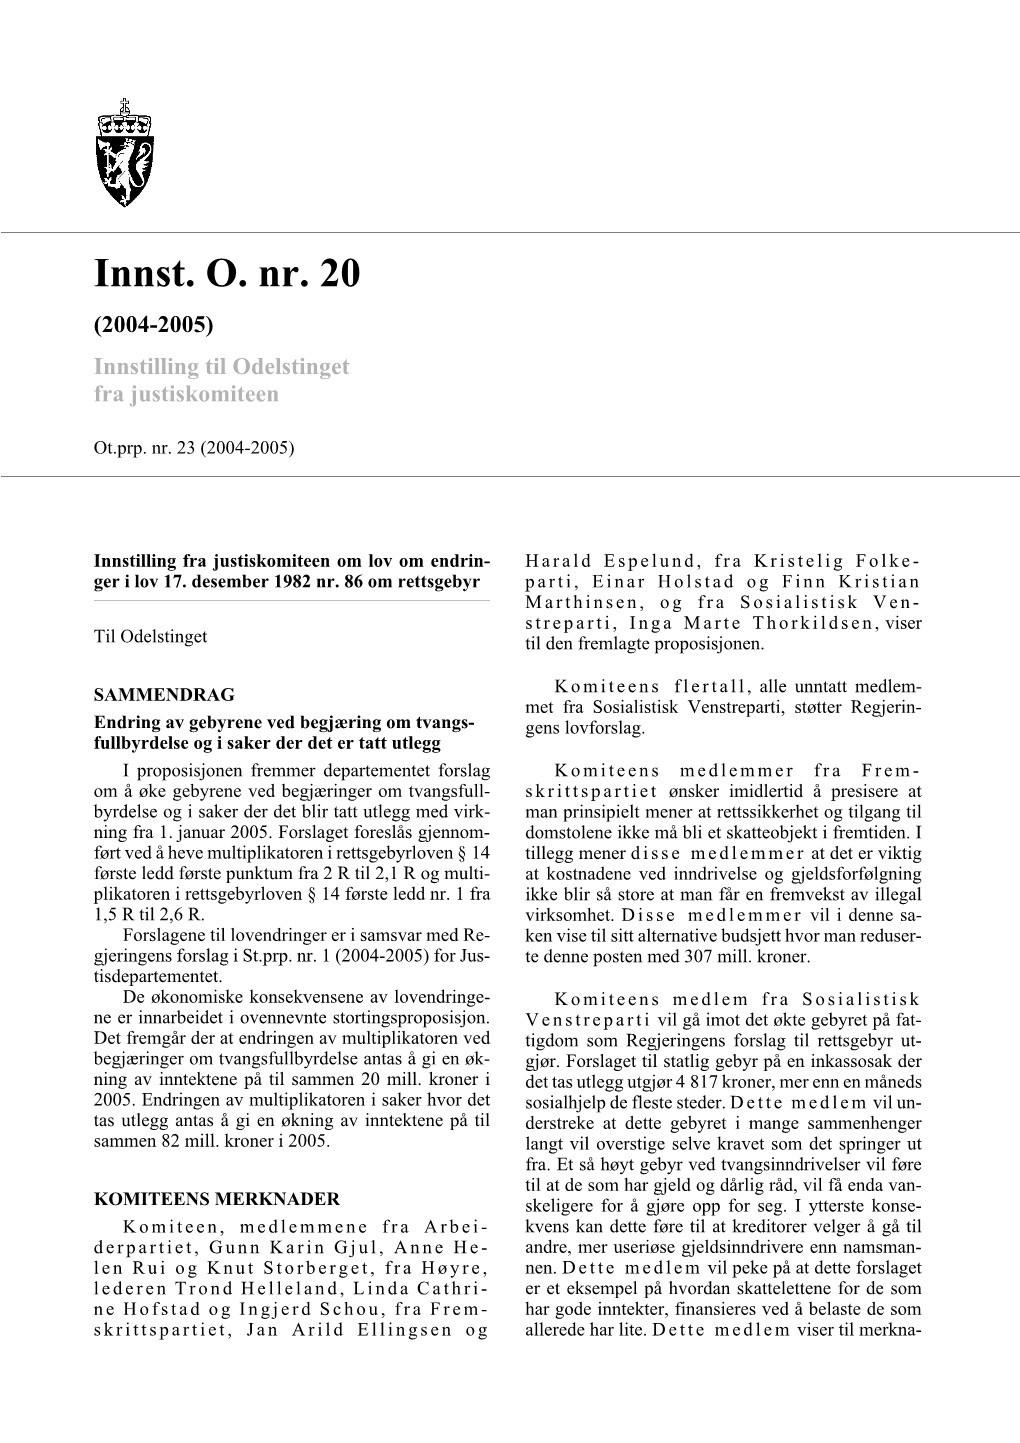 Innst. O. Nr. 20 (2004-2005) Innstilling Til Odelstinget Fra Justiskomiteen